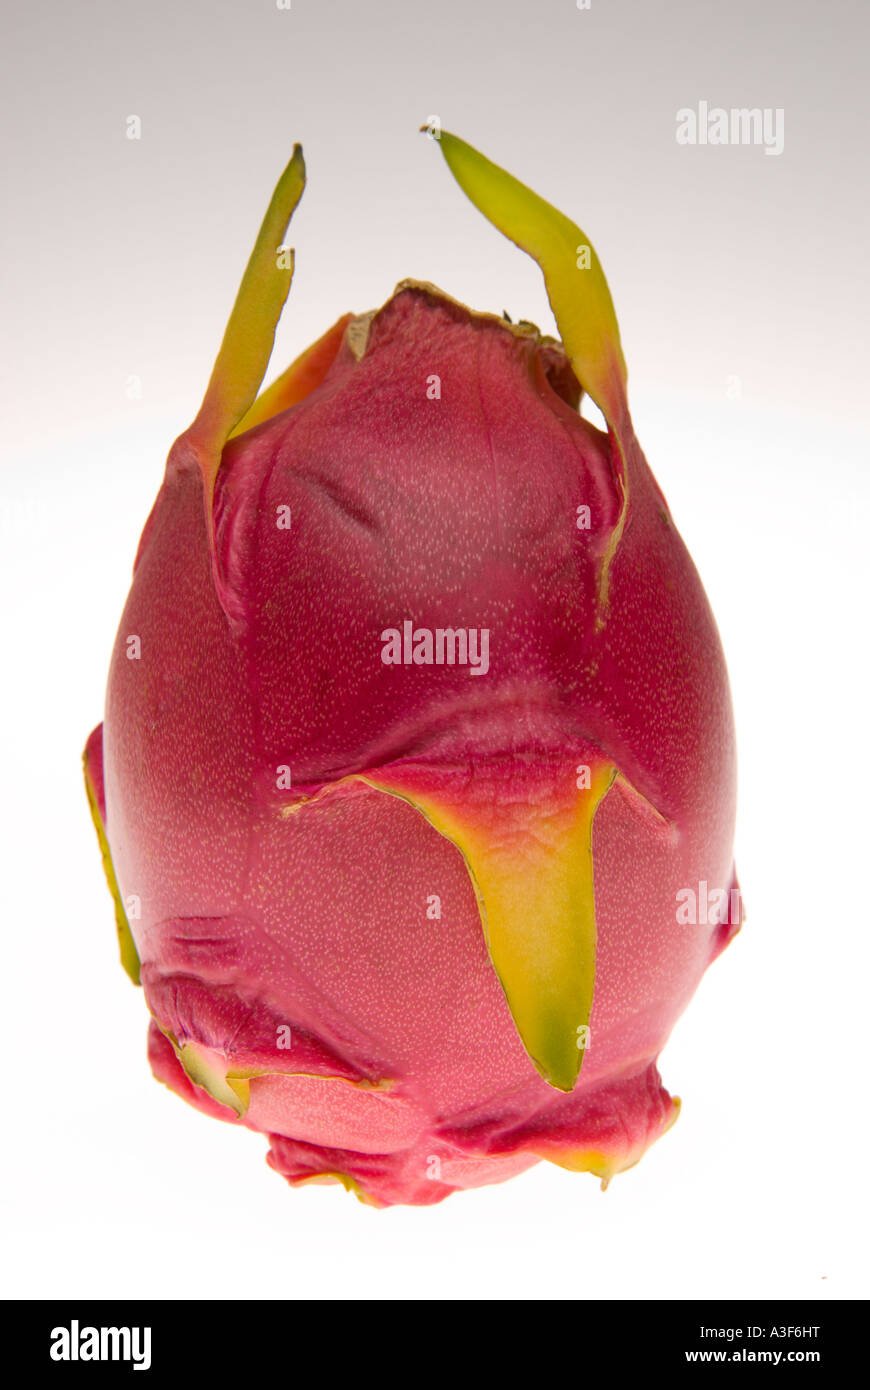 Dragonfruit or strawberry pear S E Asian cactus fruit pitaya Stock Photo